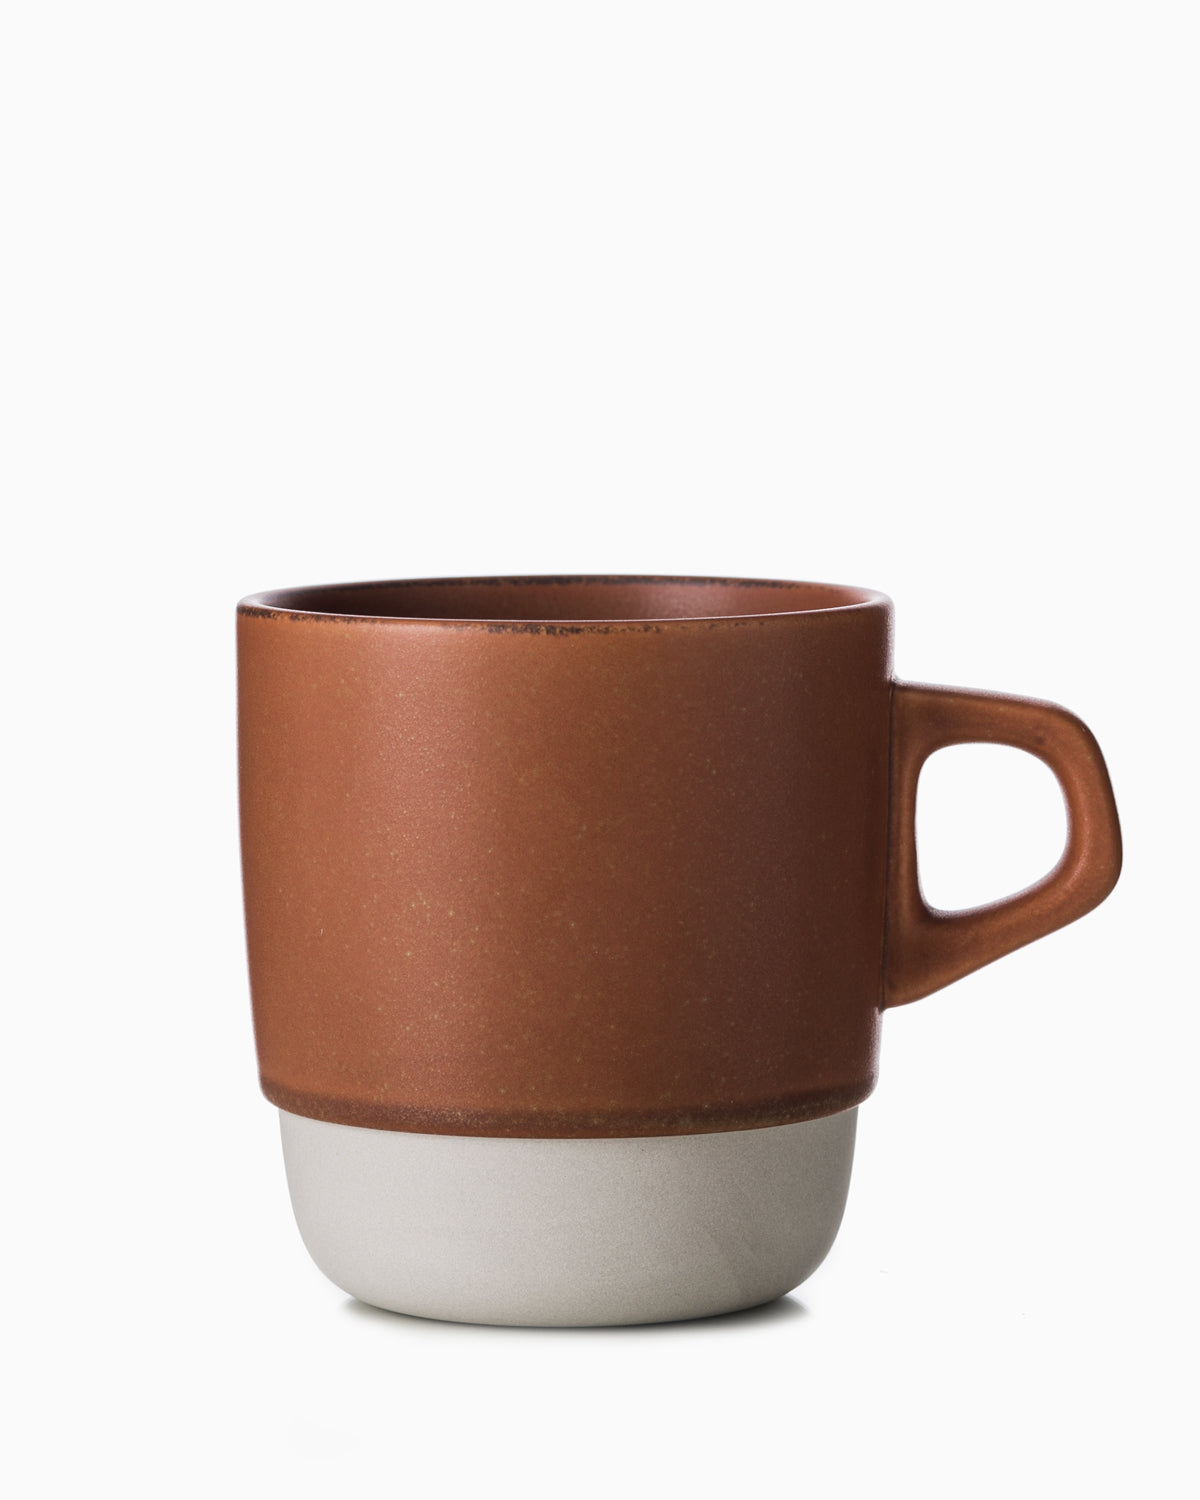 Stacking Mug - Terracotta